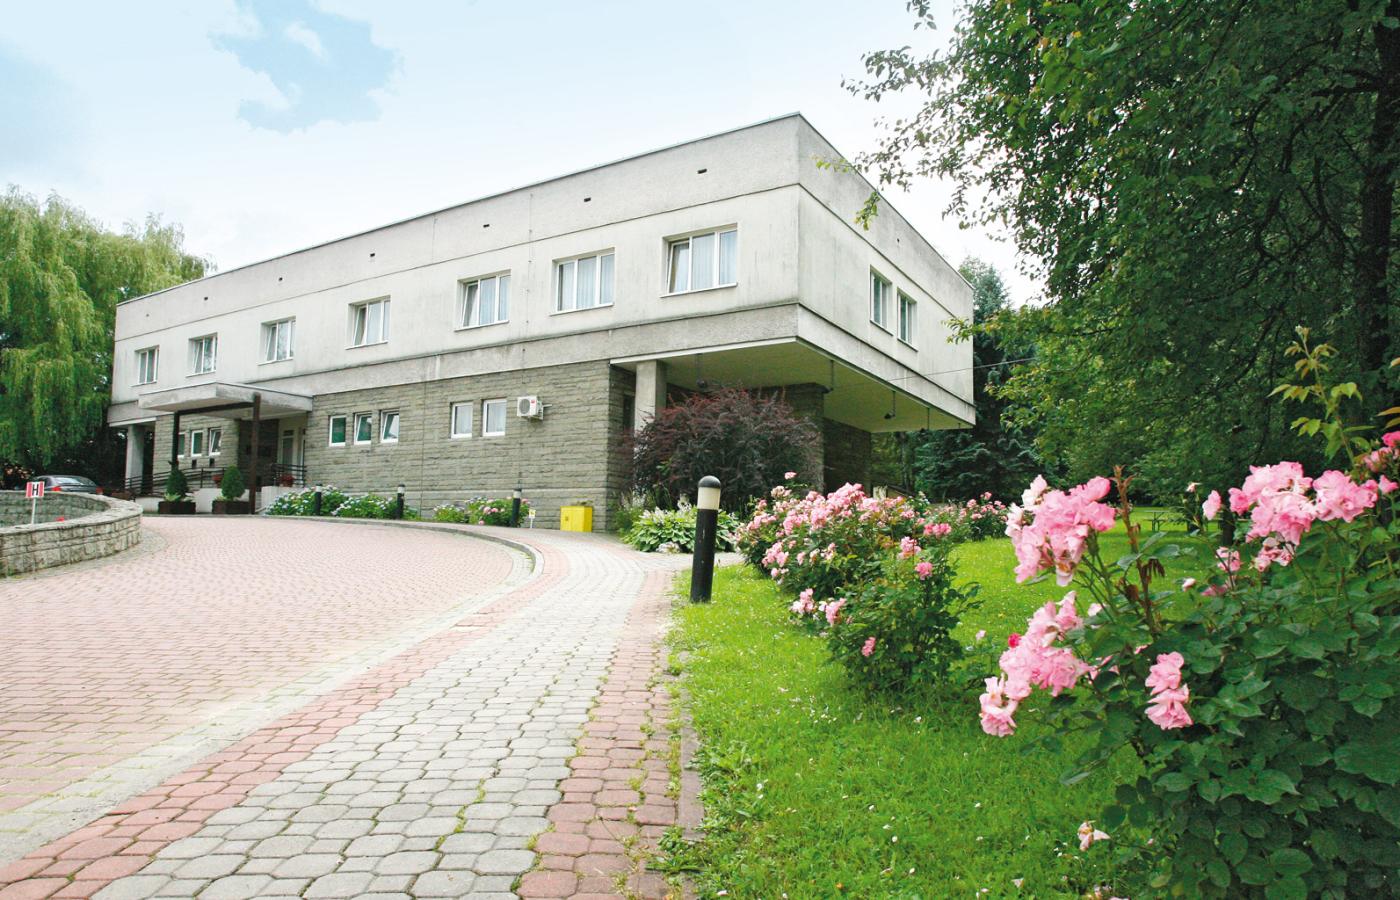 Zielony Dół - ośrodek recepcyjno-hotelowy zbudowany w PRL, wyremontowany przez Laboratorium Cogito.